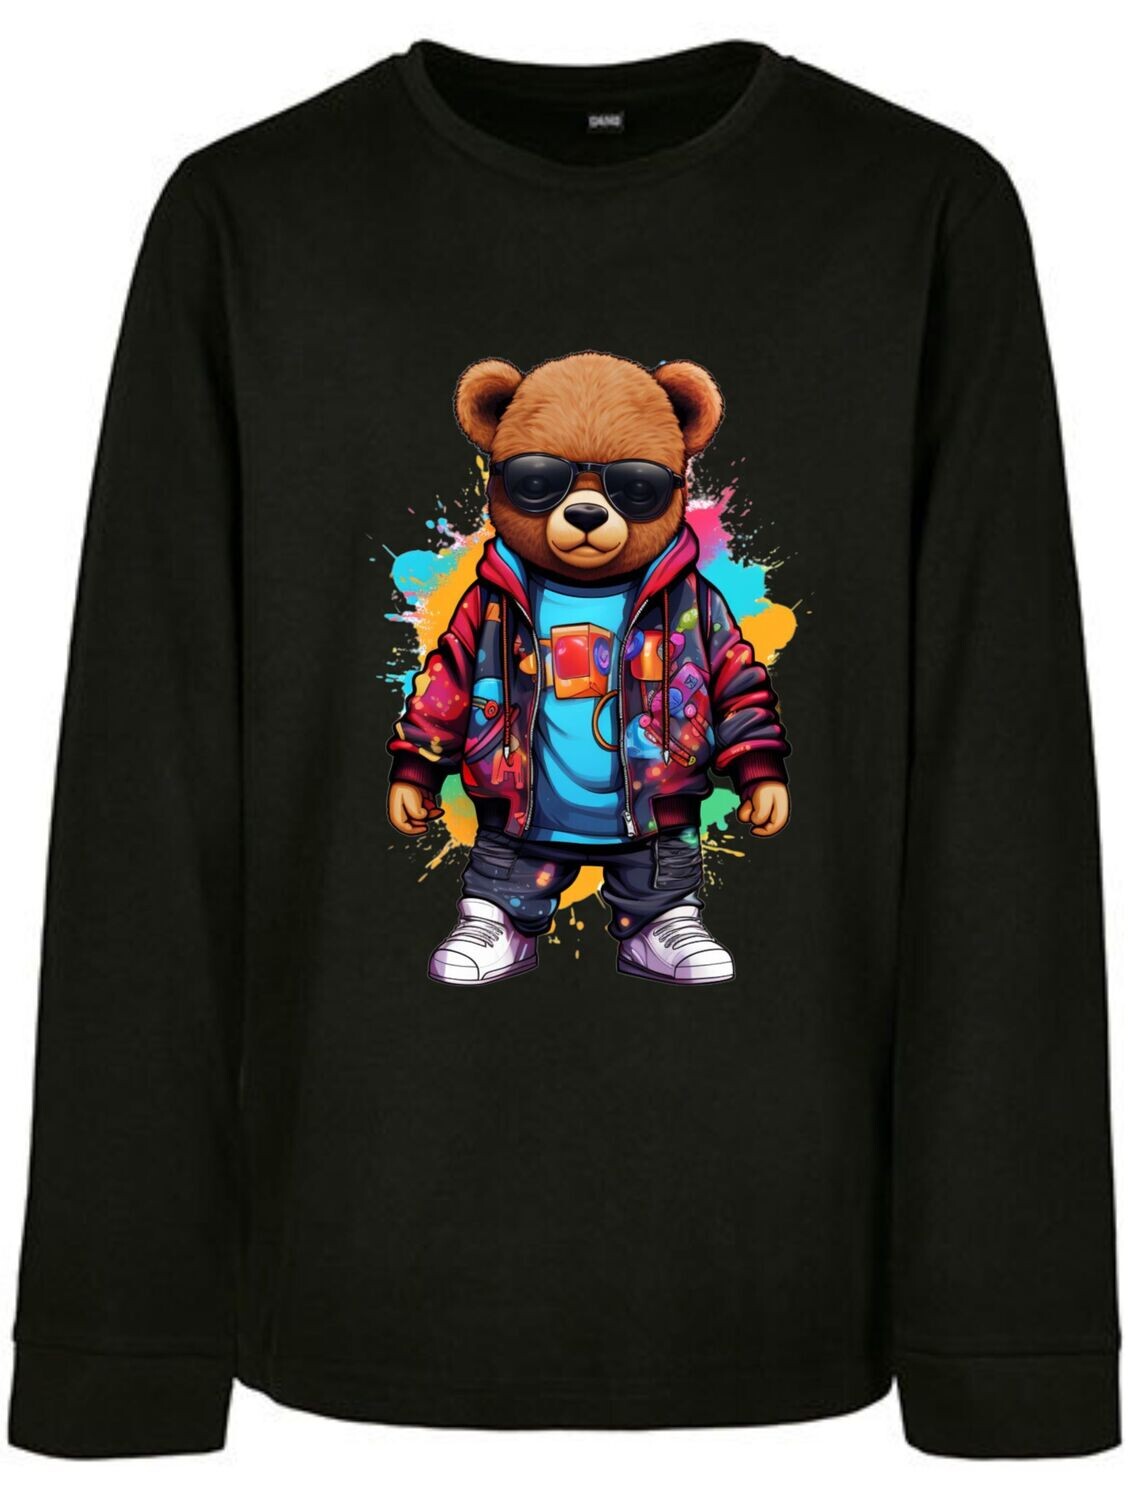 Sweatshirt Teddy Colorful 2